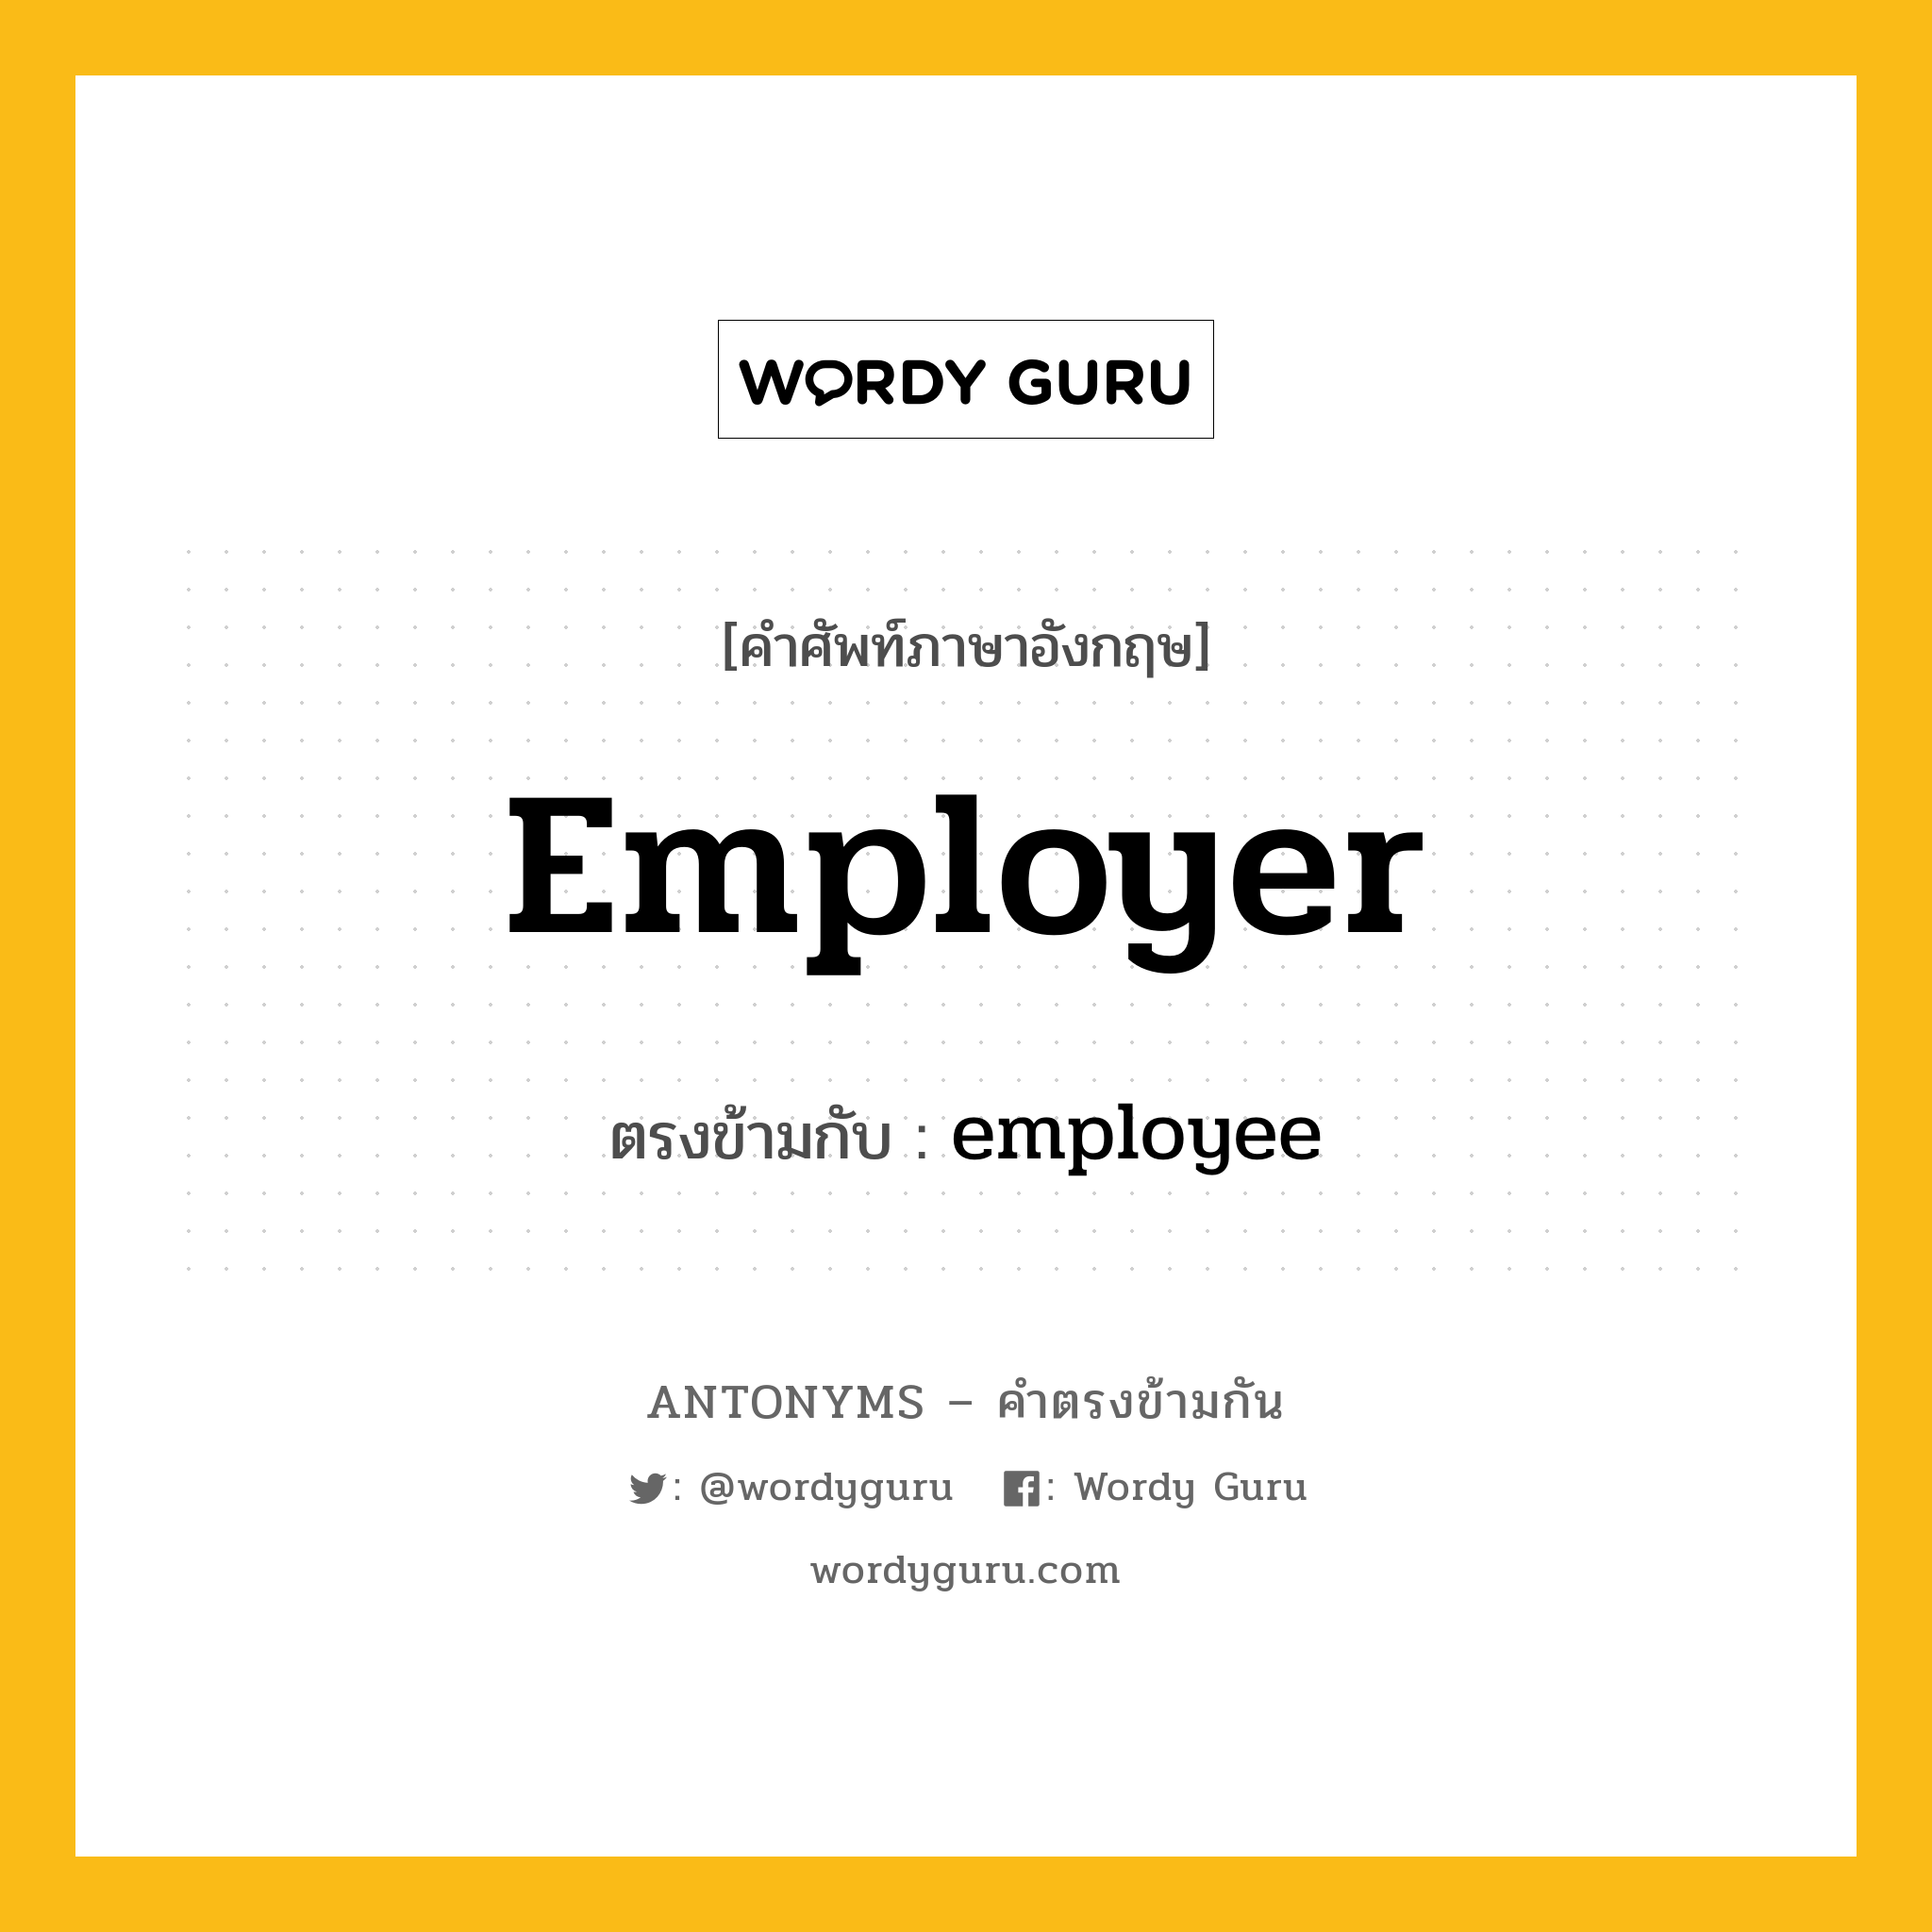 employer เป็นคำตรงข้ามกับคำไหนบ้าง?, คำศัพท์ภาษาอังกฤษ employer ตรงข้ามกับ employee หมวด employee